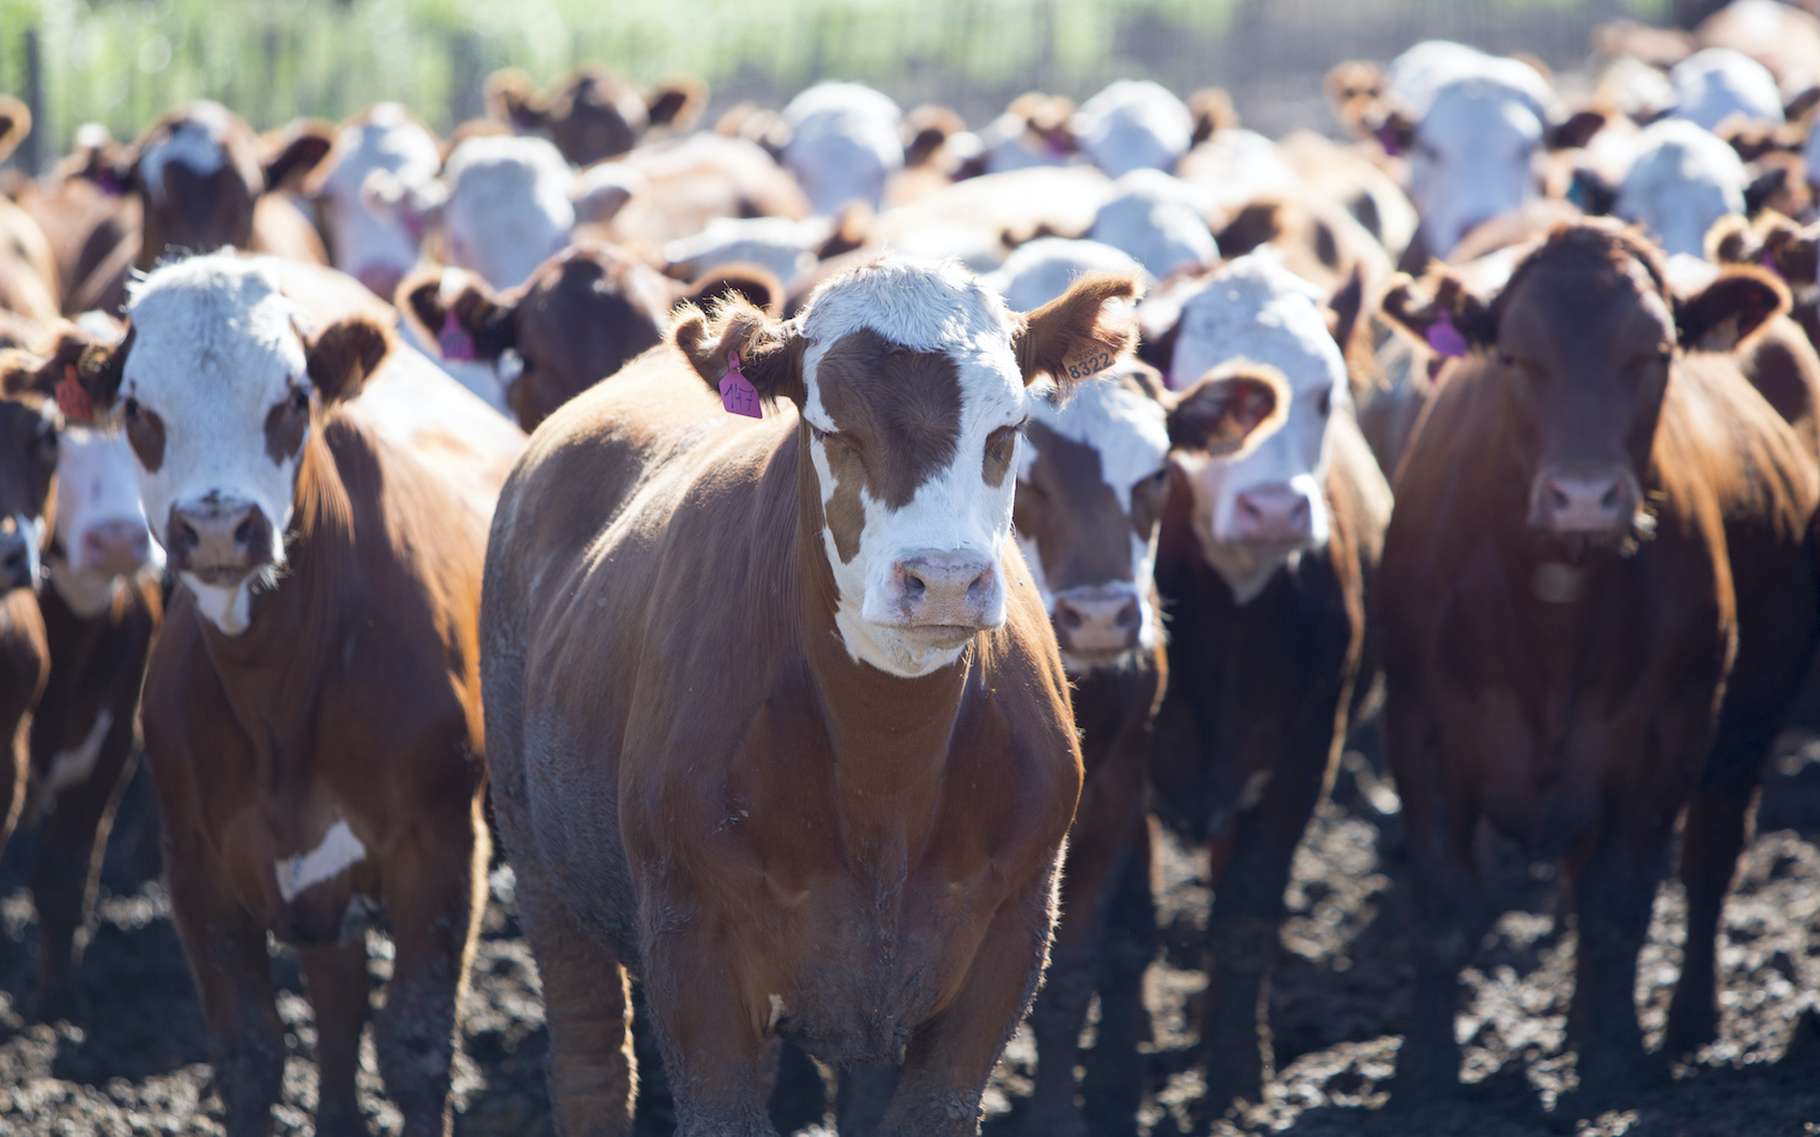 L’élevage intensif – ici de vaches en Uruguay – est l’un des responsables du réchauffement climatique que nous vivons actuellement. © piccaya, Adobe Stock